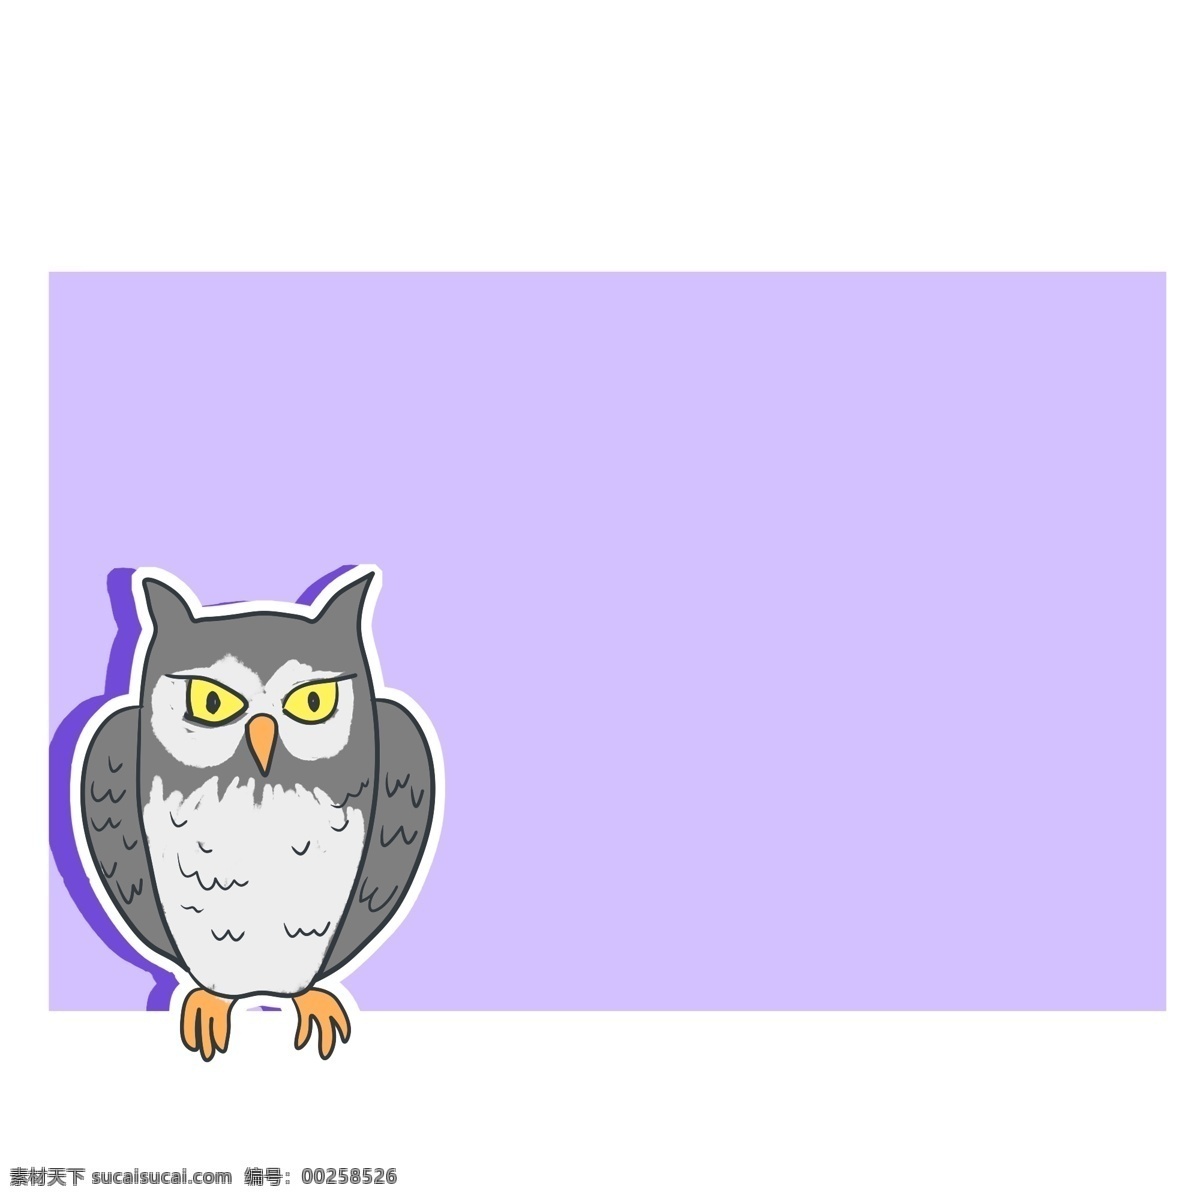 卡通 猫头鹰 温馨 提示 边框 猫头鹰装饰 卡通边框 紫色边框 温馨提示边框 可爱的边框 边框装饰